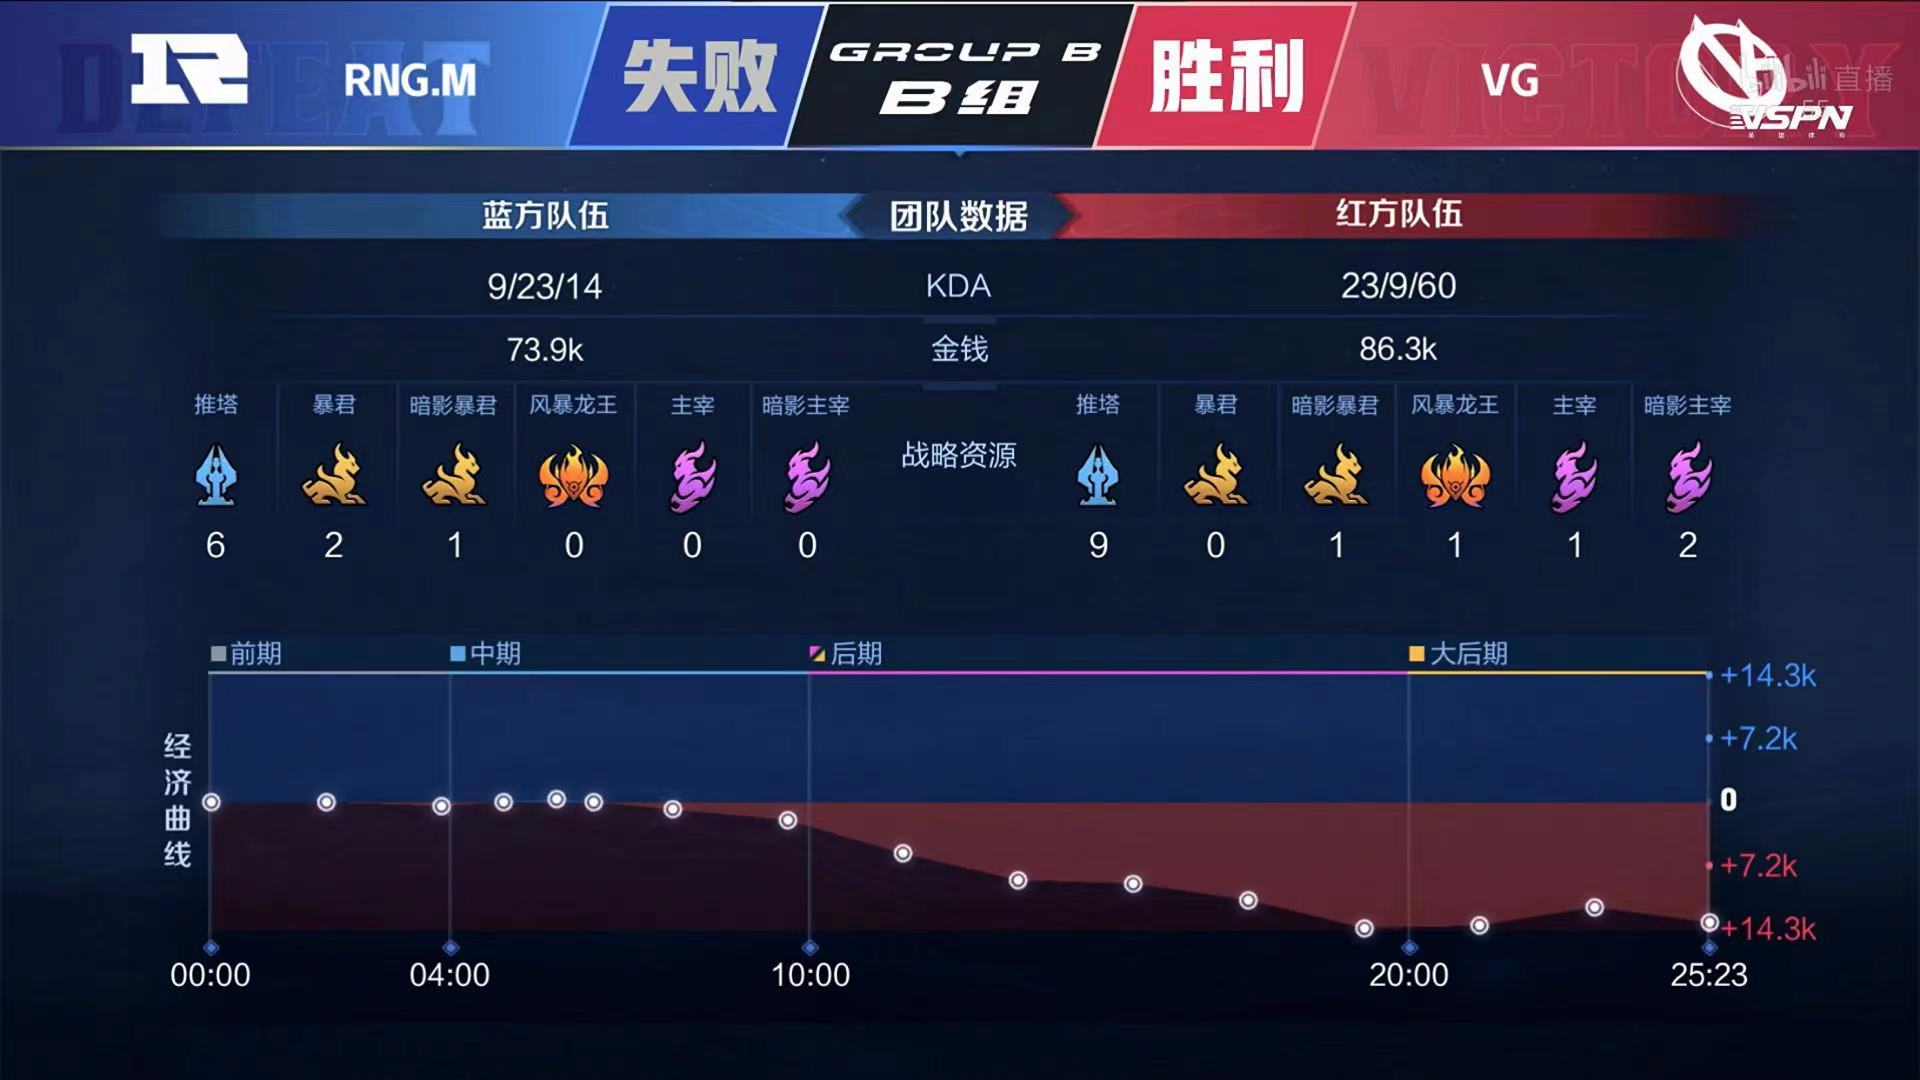 [战报] 762马超三连决胜 VG战胜RNG.M 取得两连胜！